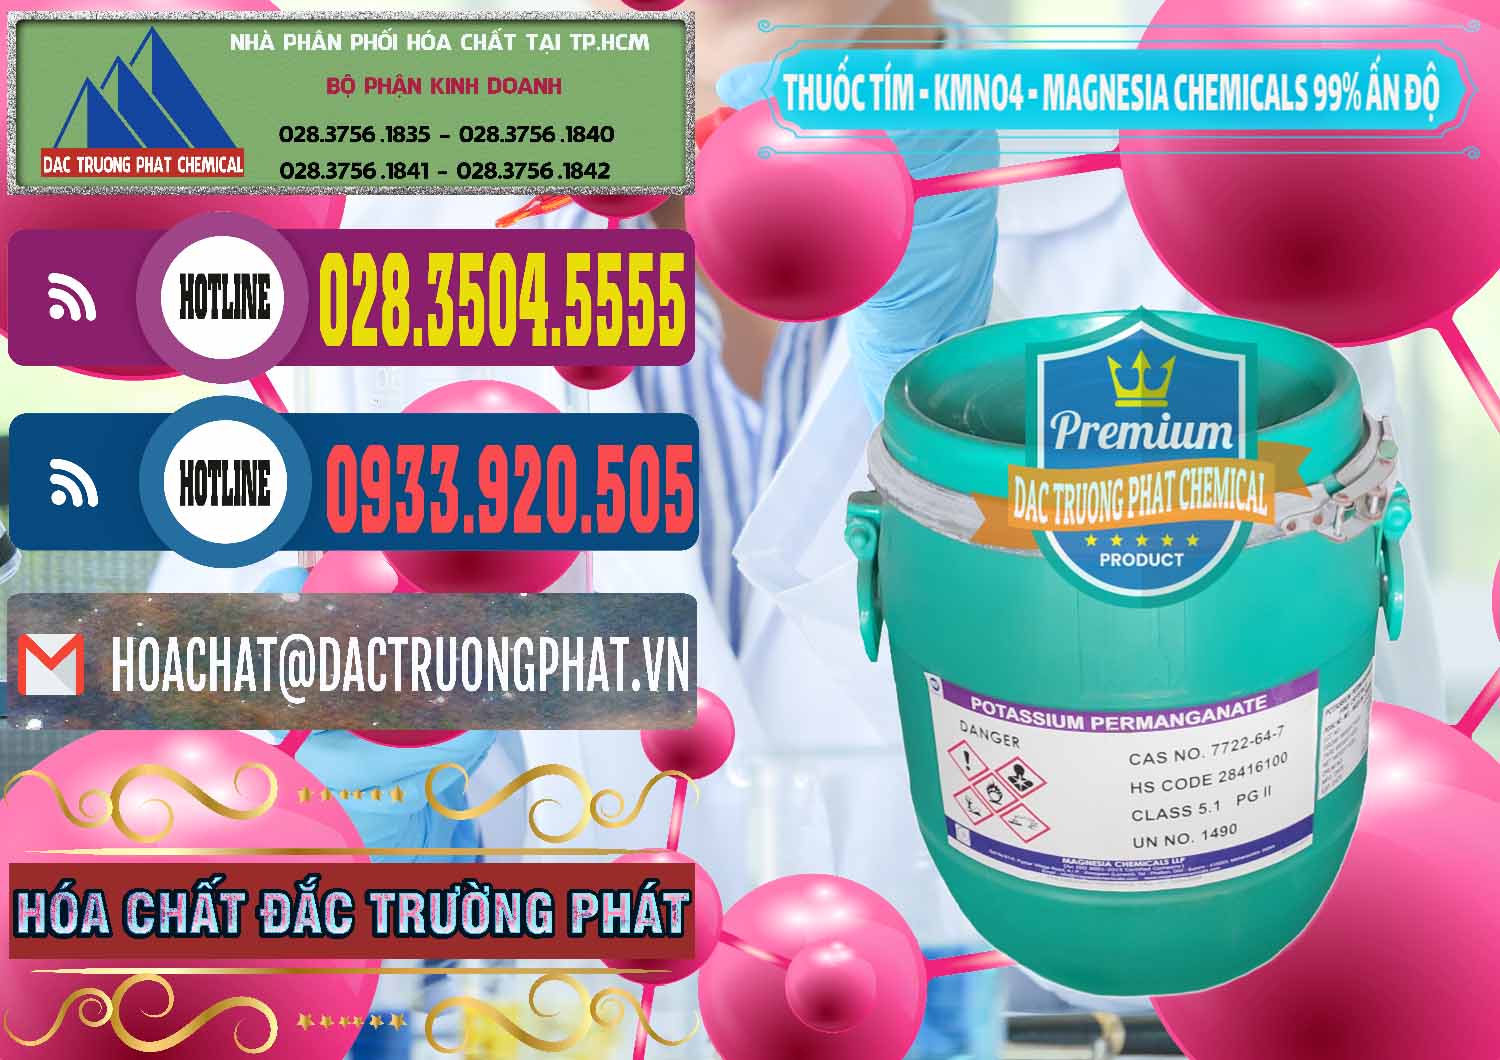 Nơi bán - phân phối Thuốc Tím - KMNO4 Magnesia Chemicals 99% Ấn Độ India - 0251 - Cty nhập khẩu & phân phối hóa chất tại TP.HCM - muabanhoachat.com.vn